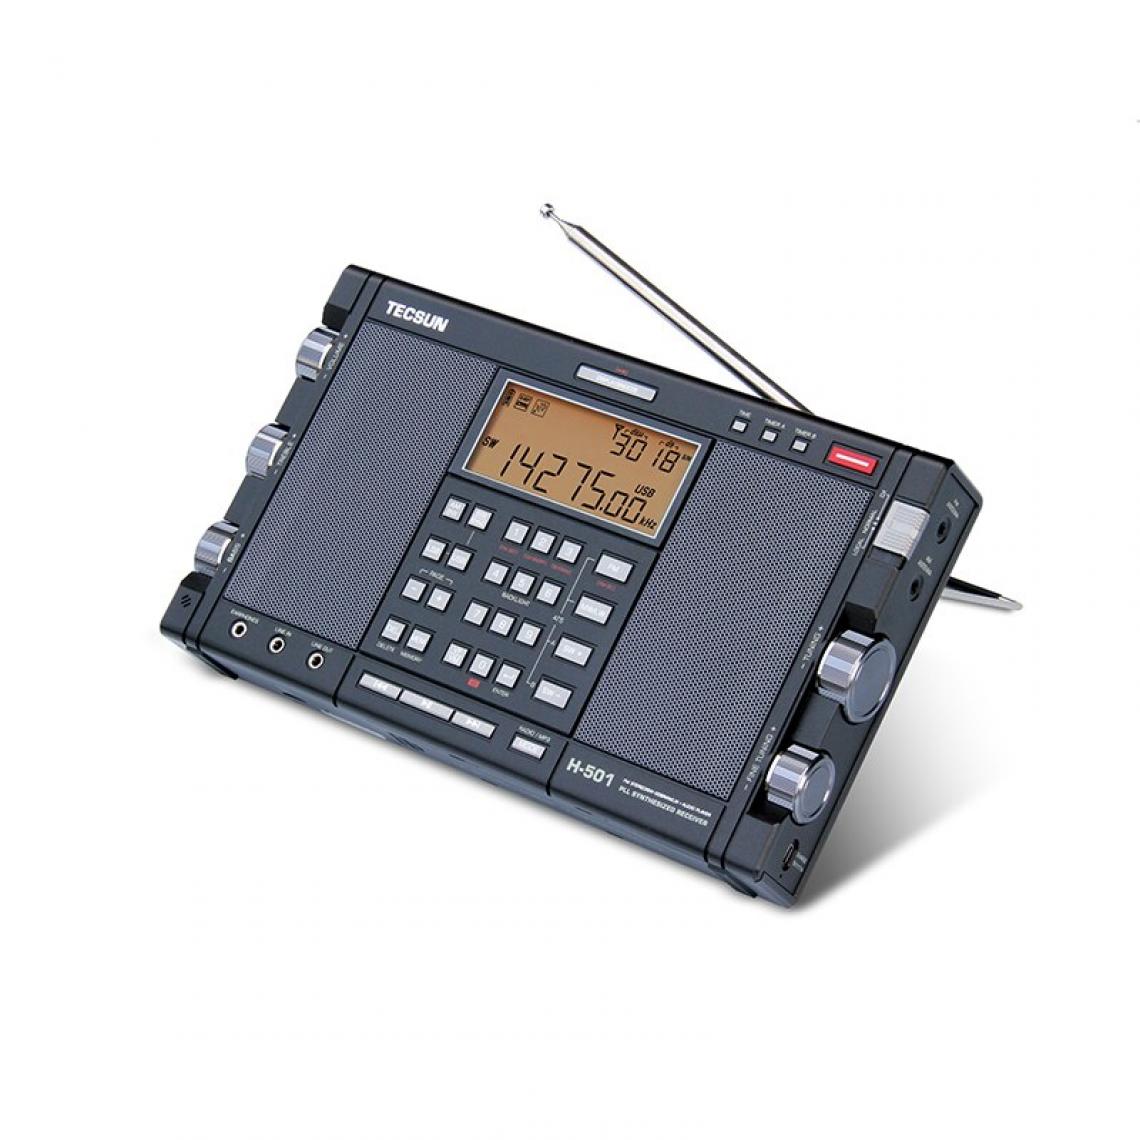 Universal - Radio stéréo portable Bluetooth Desheng H 501 haute performance pleine bande double haut-parleur tuning numérique FM AM radio ondes courtes SSB - Radio